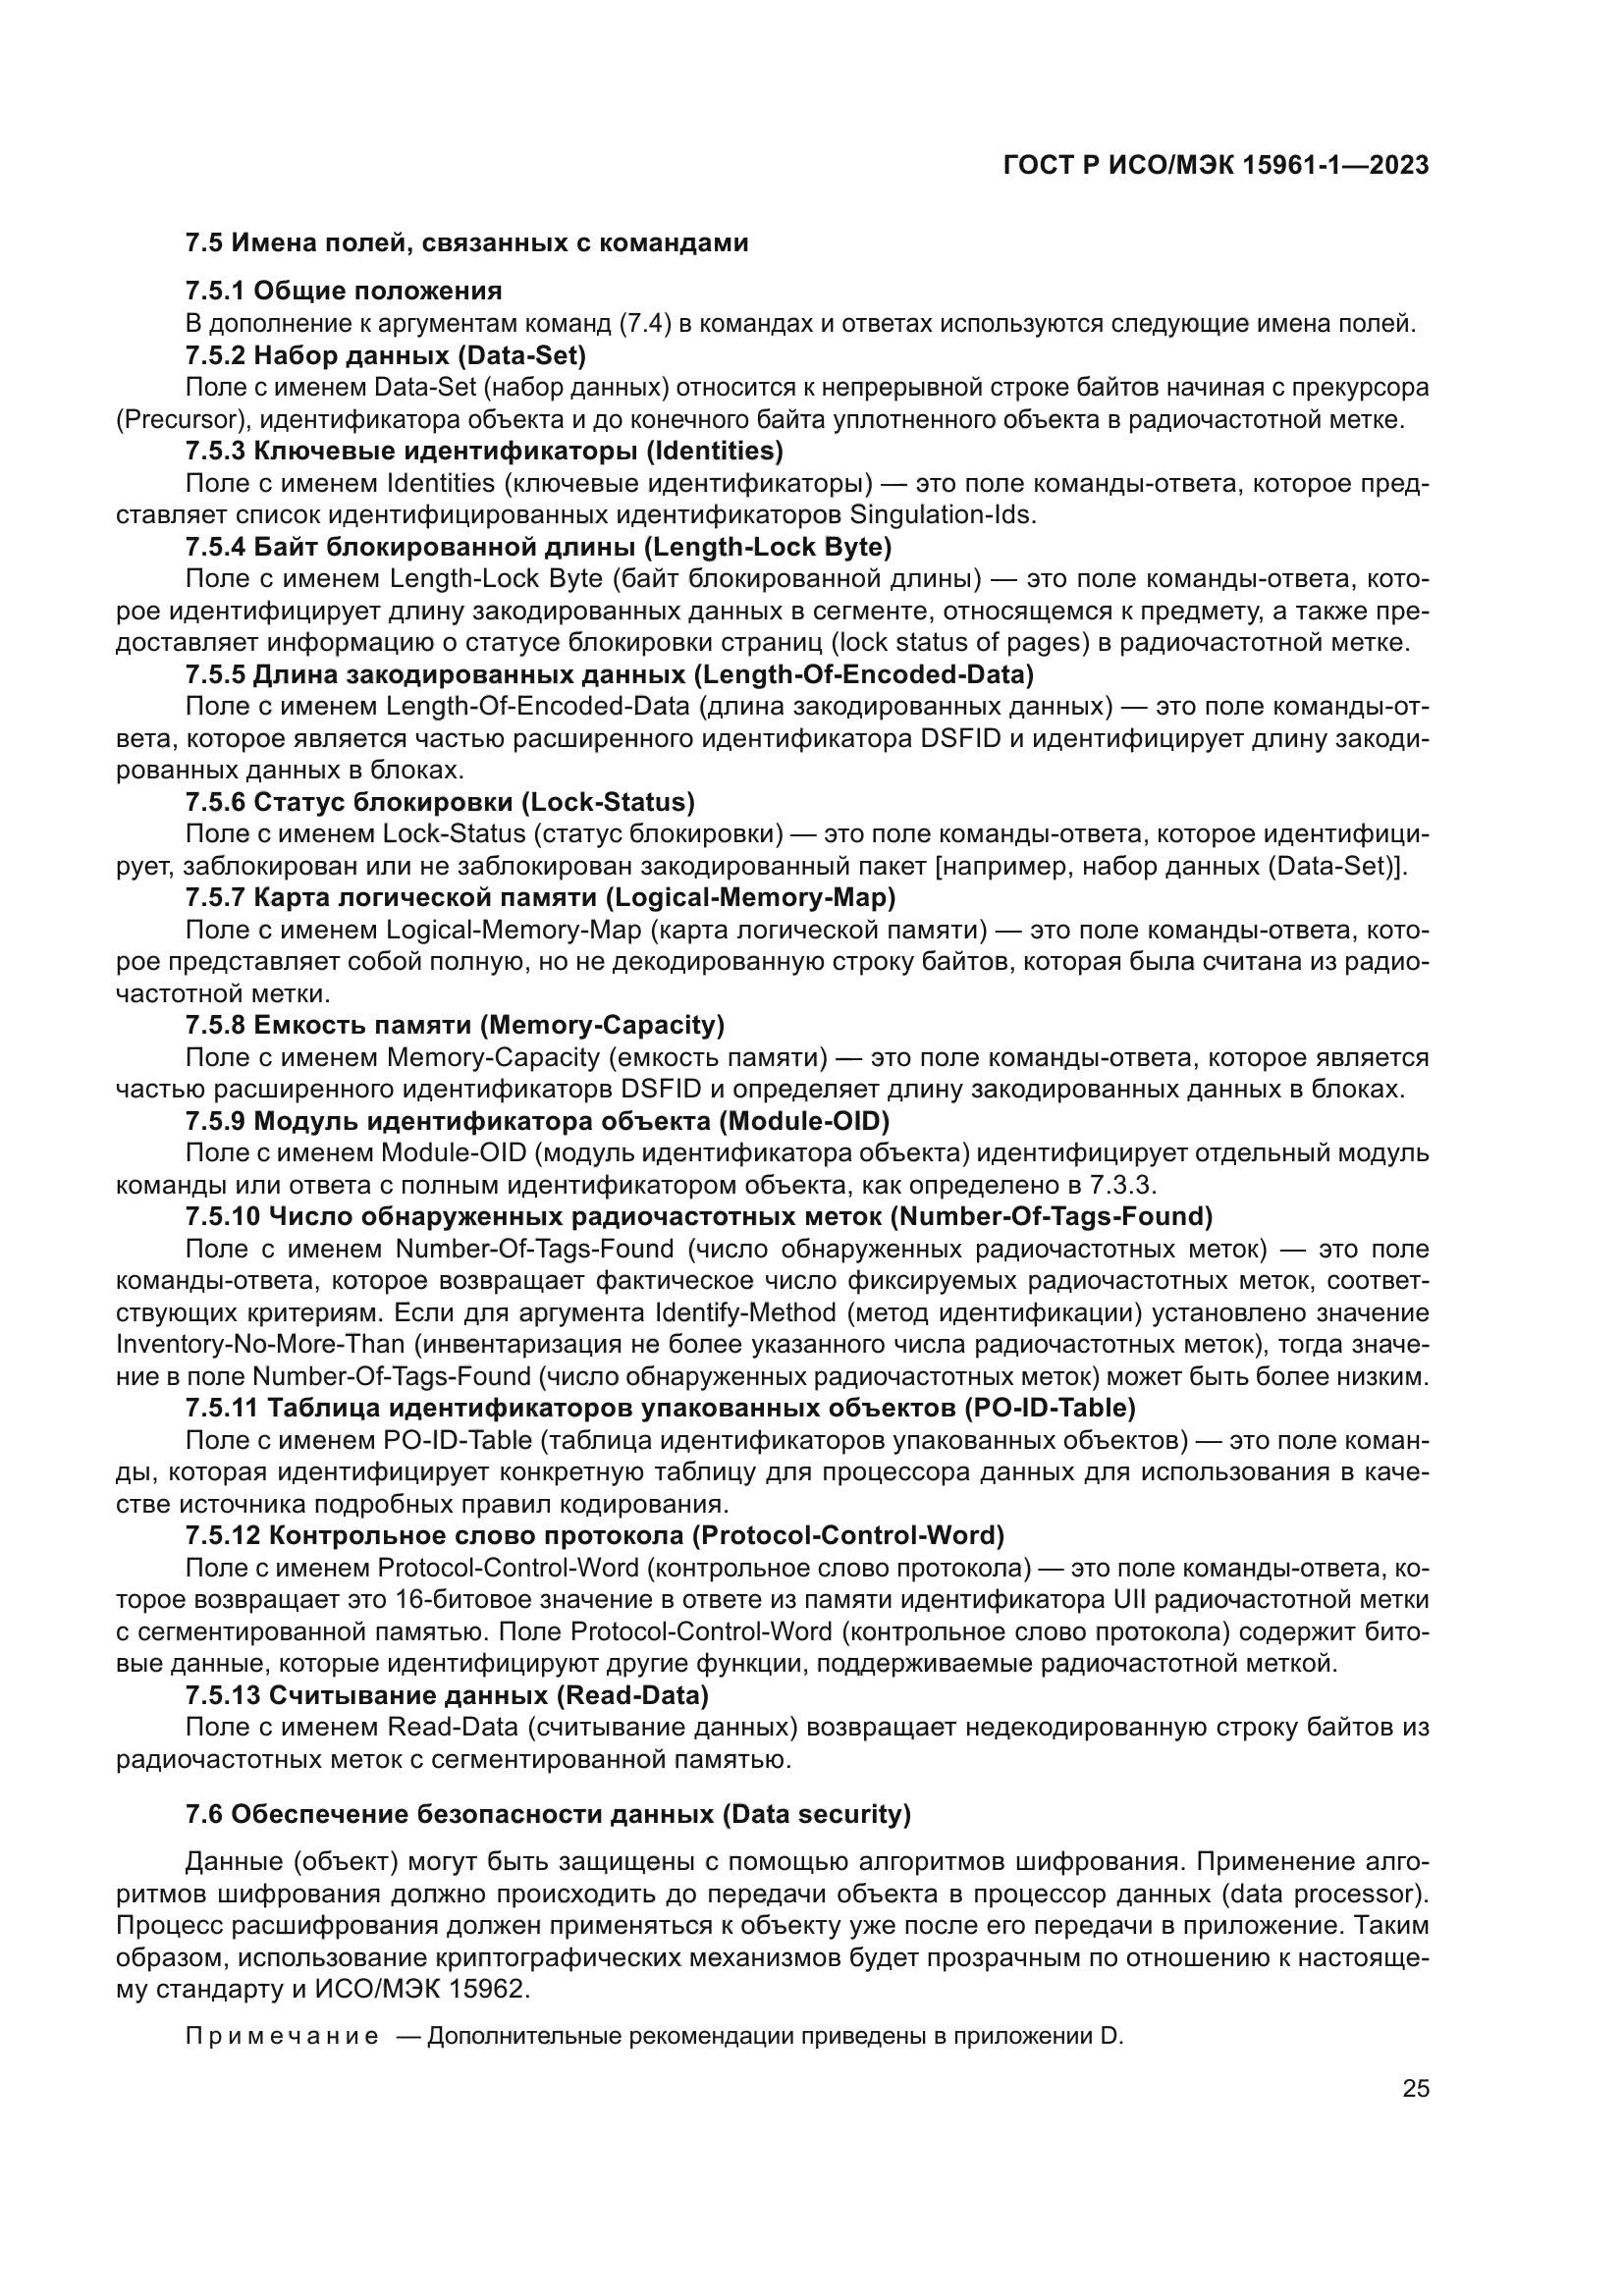 ГОСТ Р ИСО/МЭК 15961-1-2023